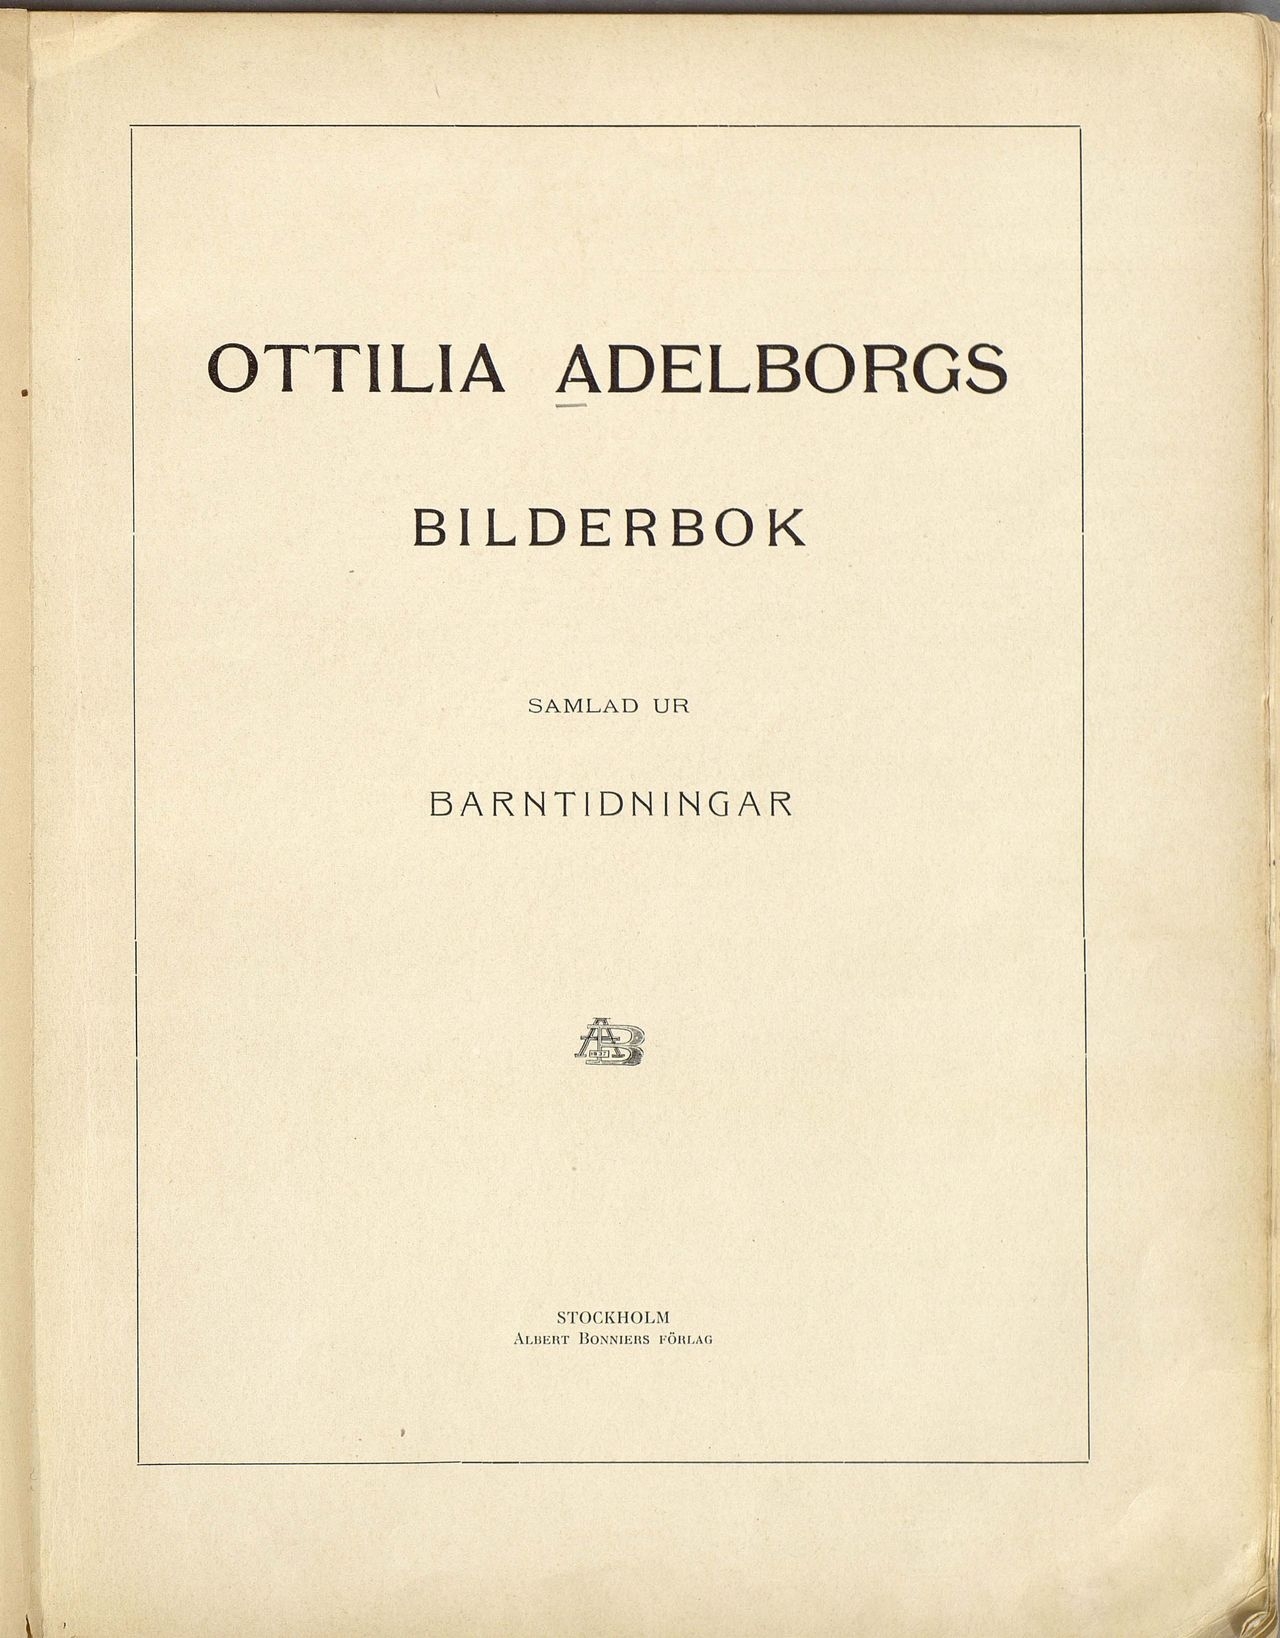 Project Runeberg, Nordic Authors／Ottilia Adelborg (1907), Bilderbok samlad ur Barntidningar (Swedish) 4